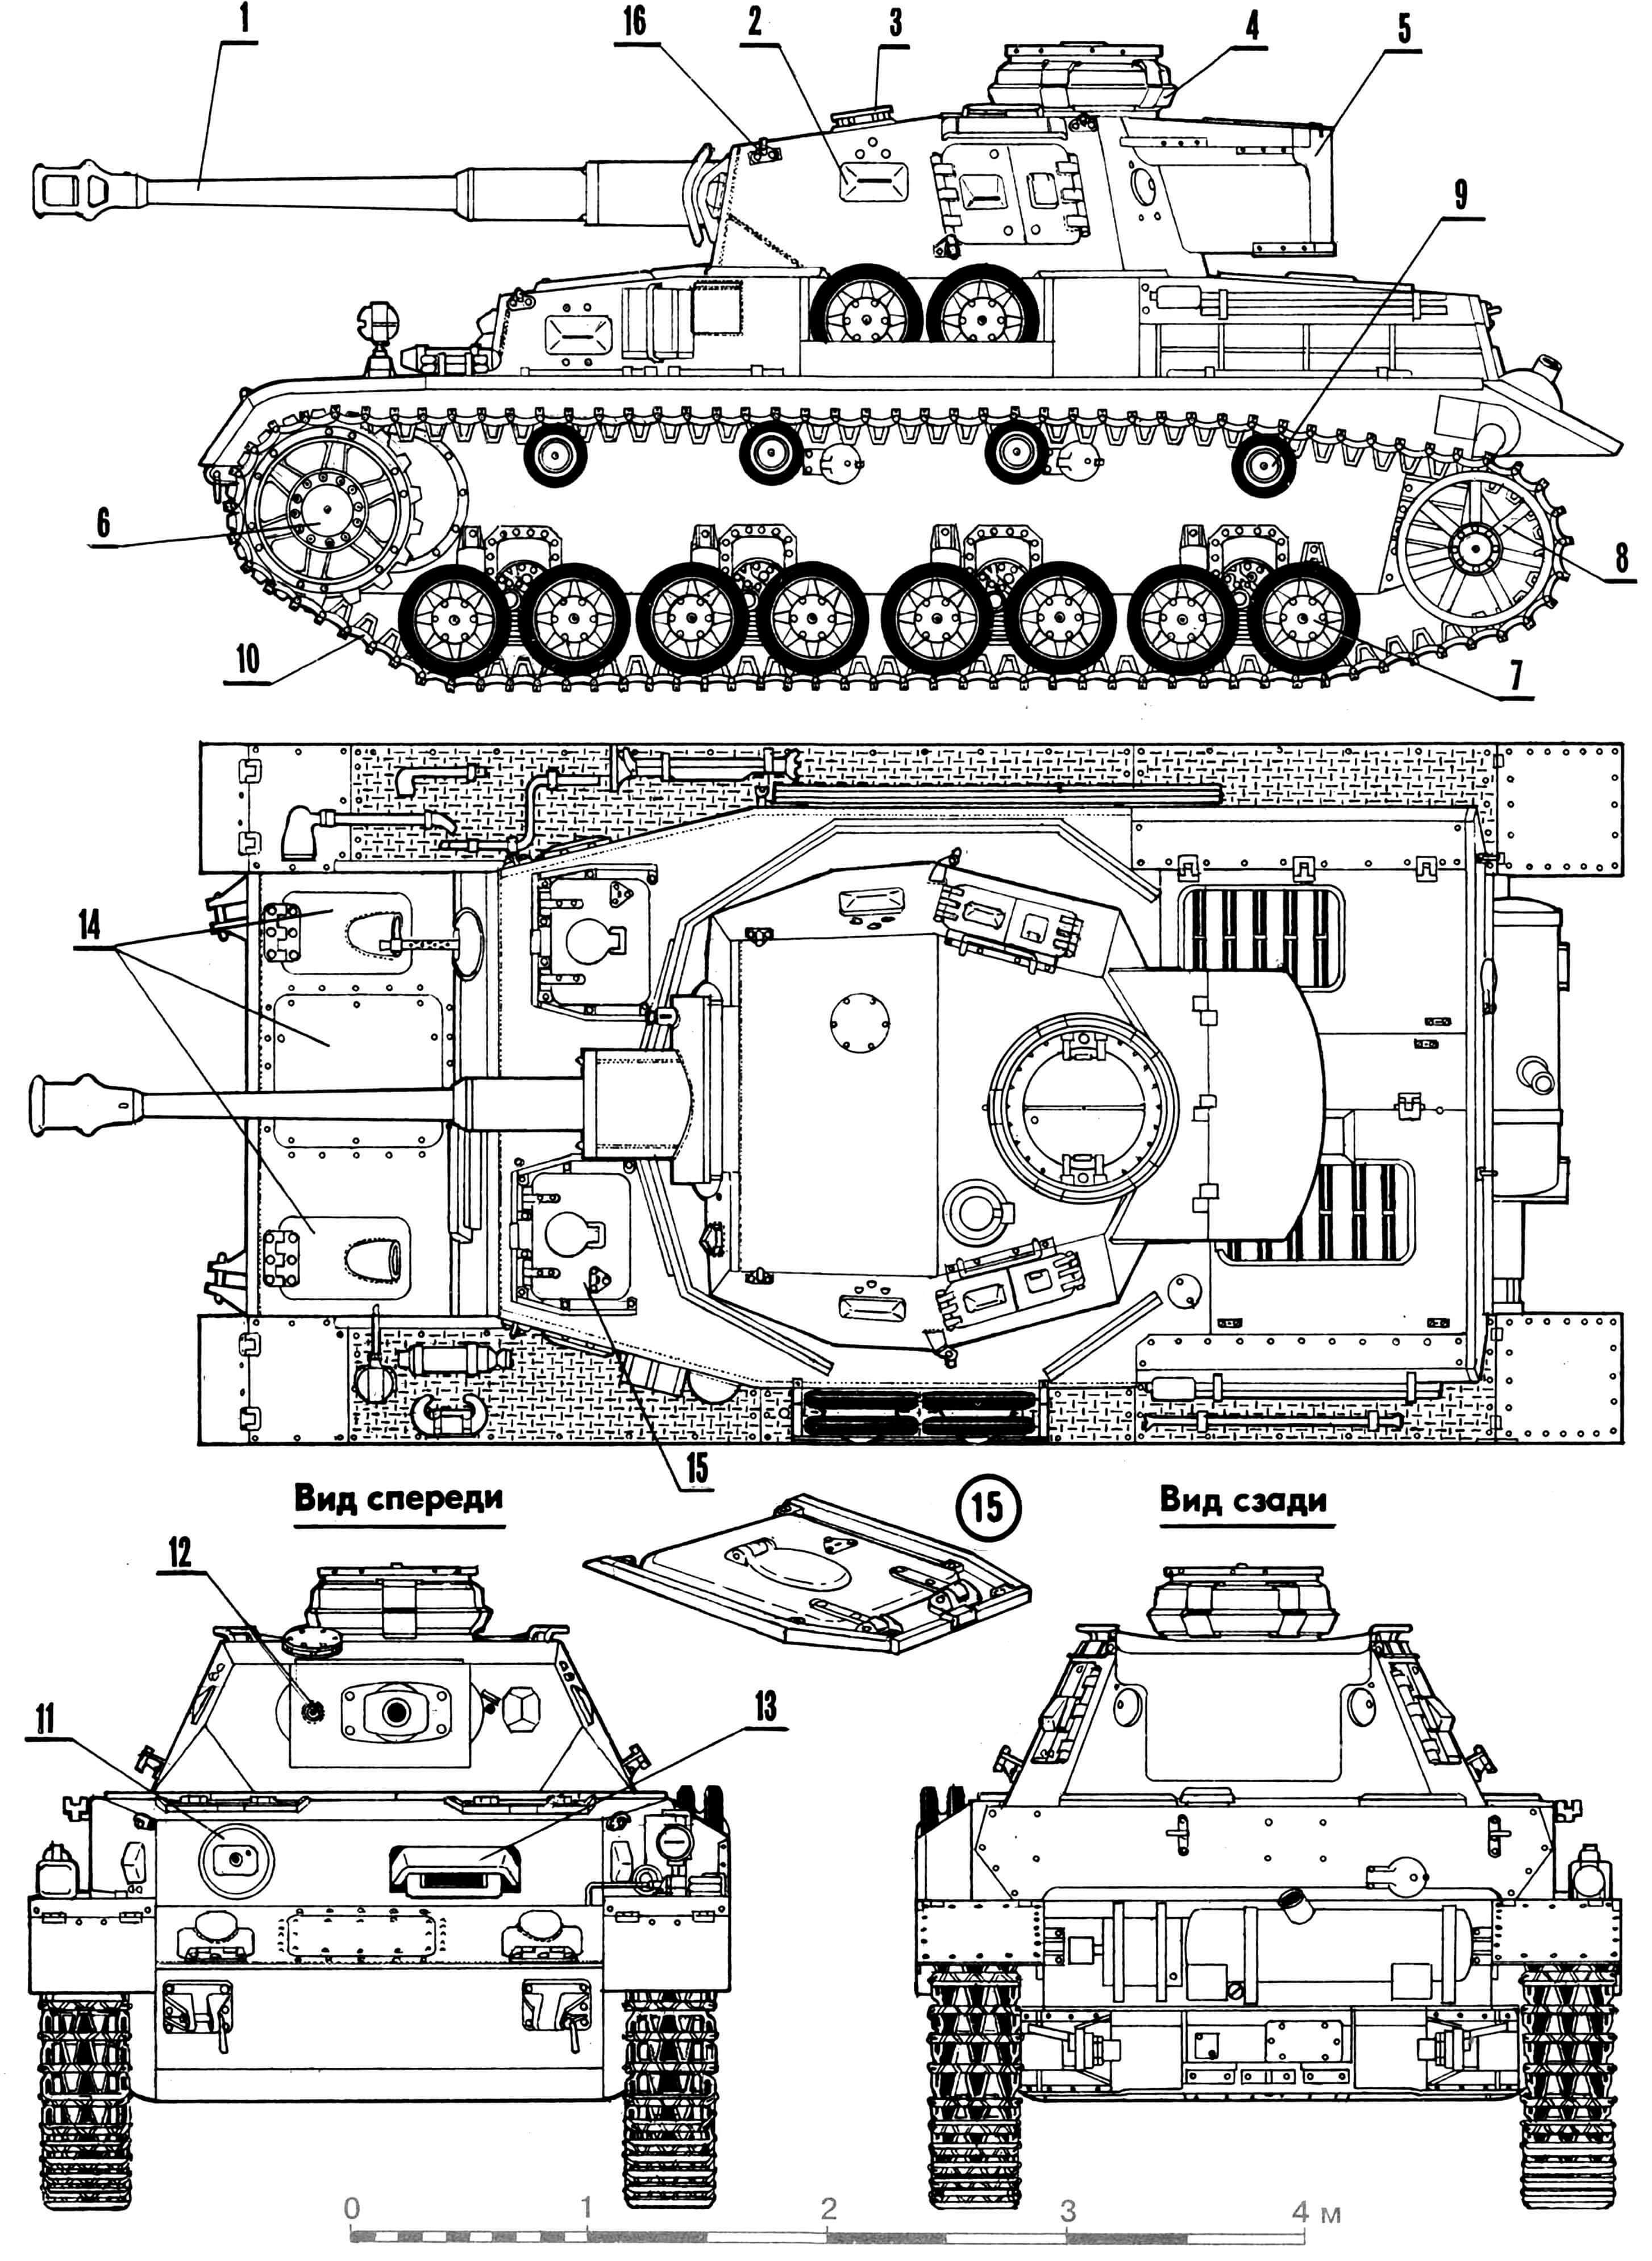 Средний танк Pz.Kpfw.IV Ausf.G: 1 — 75-мм пушка, 2 — прибор наблюдения, 3 — колпак вентилятора, 4 — командирская башенка, 5 — ящик для снаряжения, 6 — ведущее колесо, 7 — тележка подвески, 8 — направляющее колесо, 9 — поддерживающий каток, 10 — гусеница, 11 — шаровая установка пулемета MG 34, 12 — спаренный пулемет MG 34, 13 — прибор наблюдения механика-водителя, 14 — люки для доступа к агрегатам трансмиссии, 15 — посадочный люк механика-водителя, 16 — рым. А — башня, Б — лобовая часть корпуса, В — кормовая часть корпуса, Г — траки гусеницы и натяжной механизм.